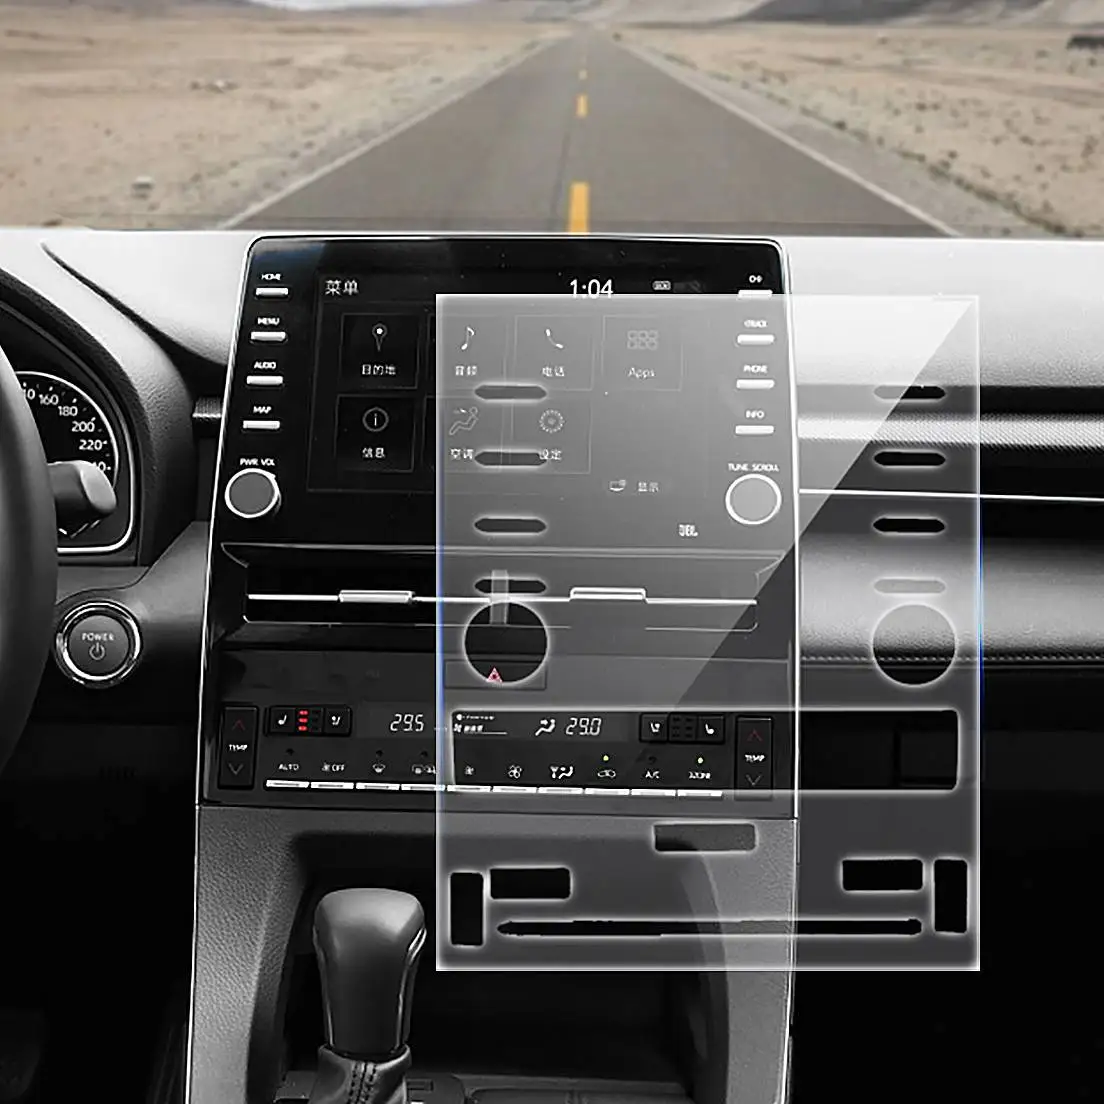 Автомобильный HD gps дисплей навигатора закаленное стекло стальная накладка пленка наклейка защита от царапин чехол для Toyota Avalon